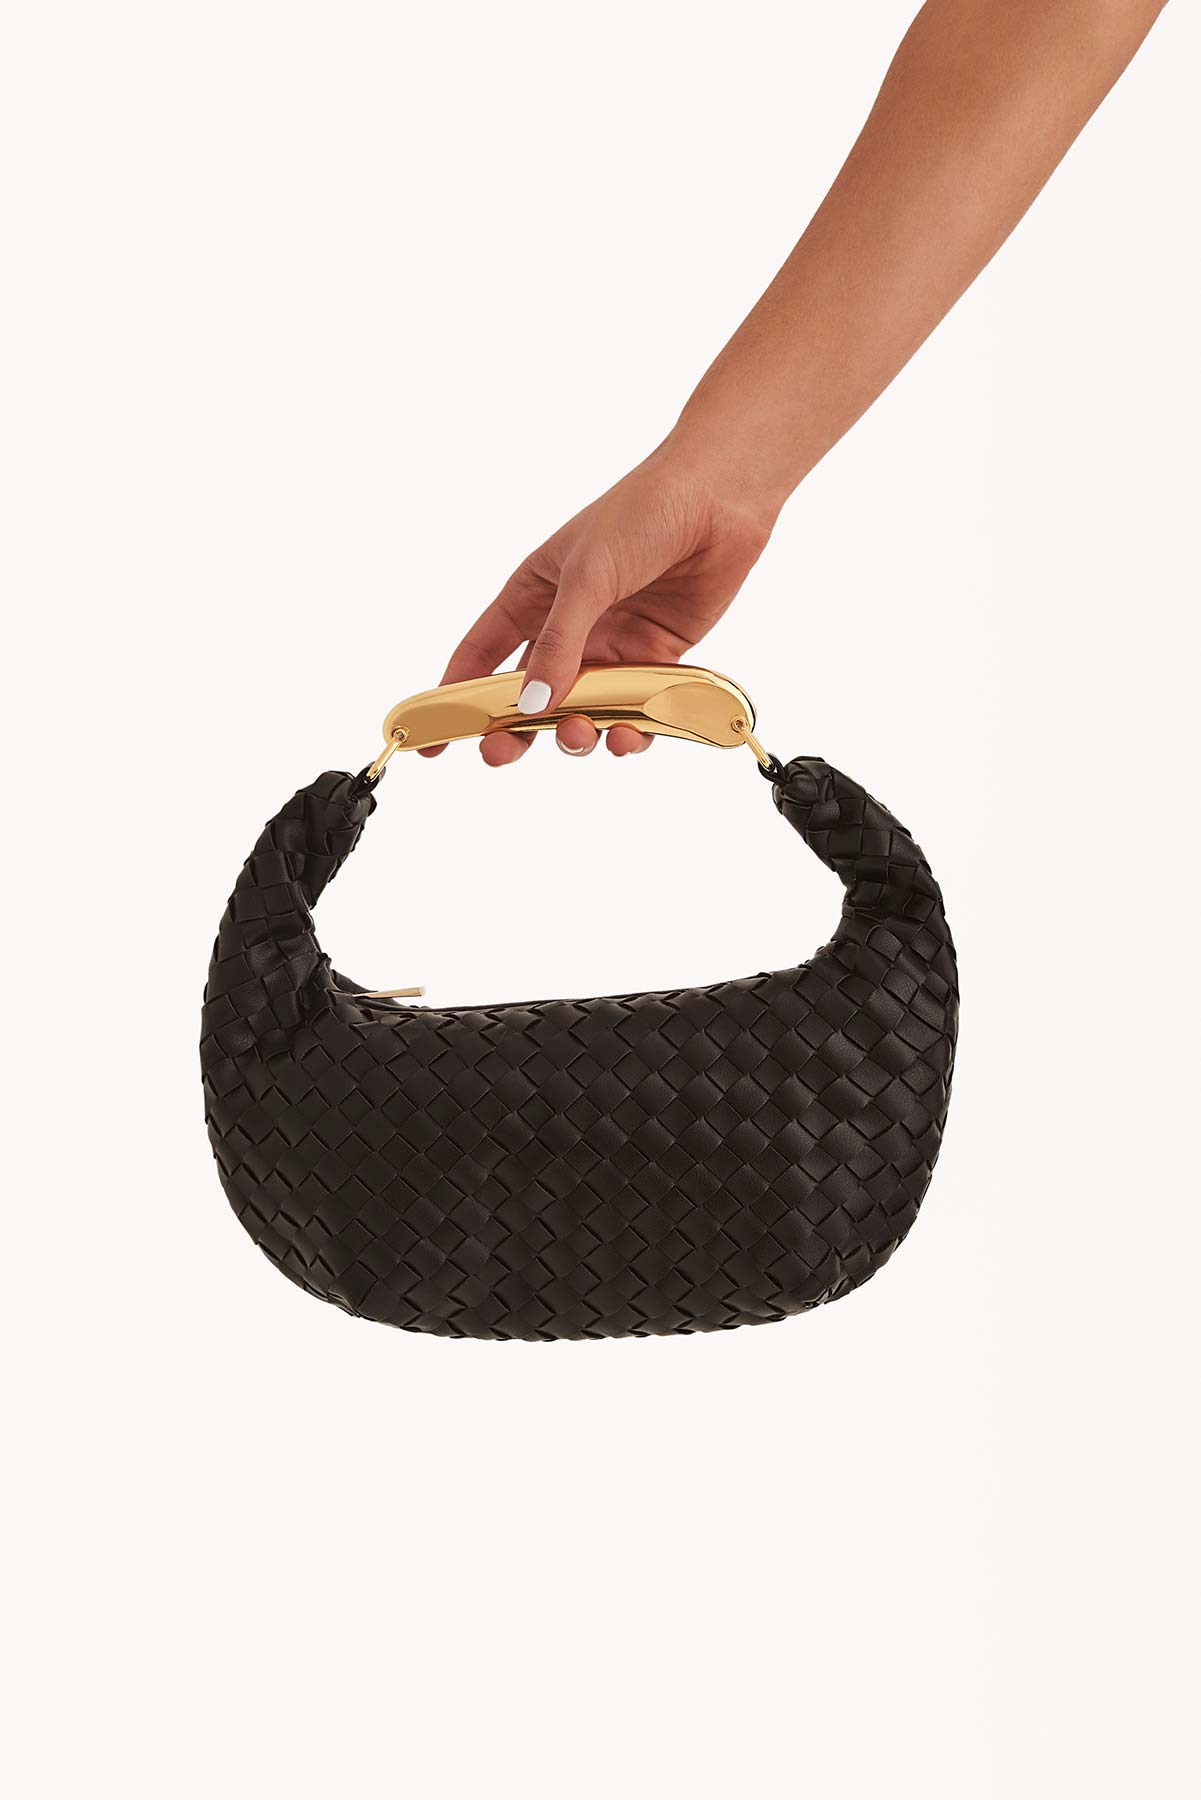 Billini - Kara Handle Bag - Black